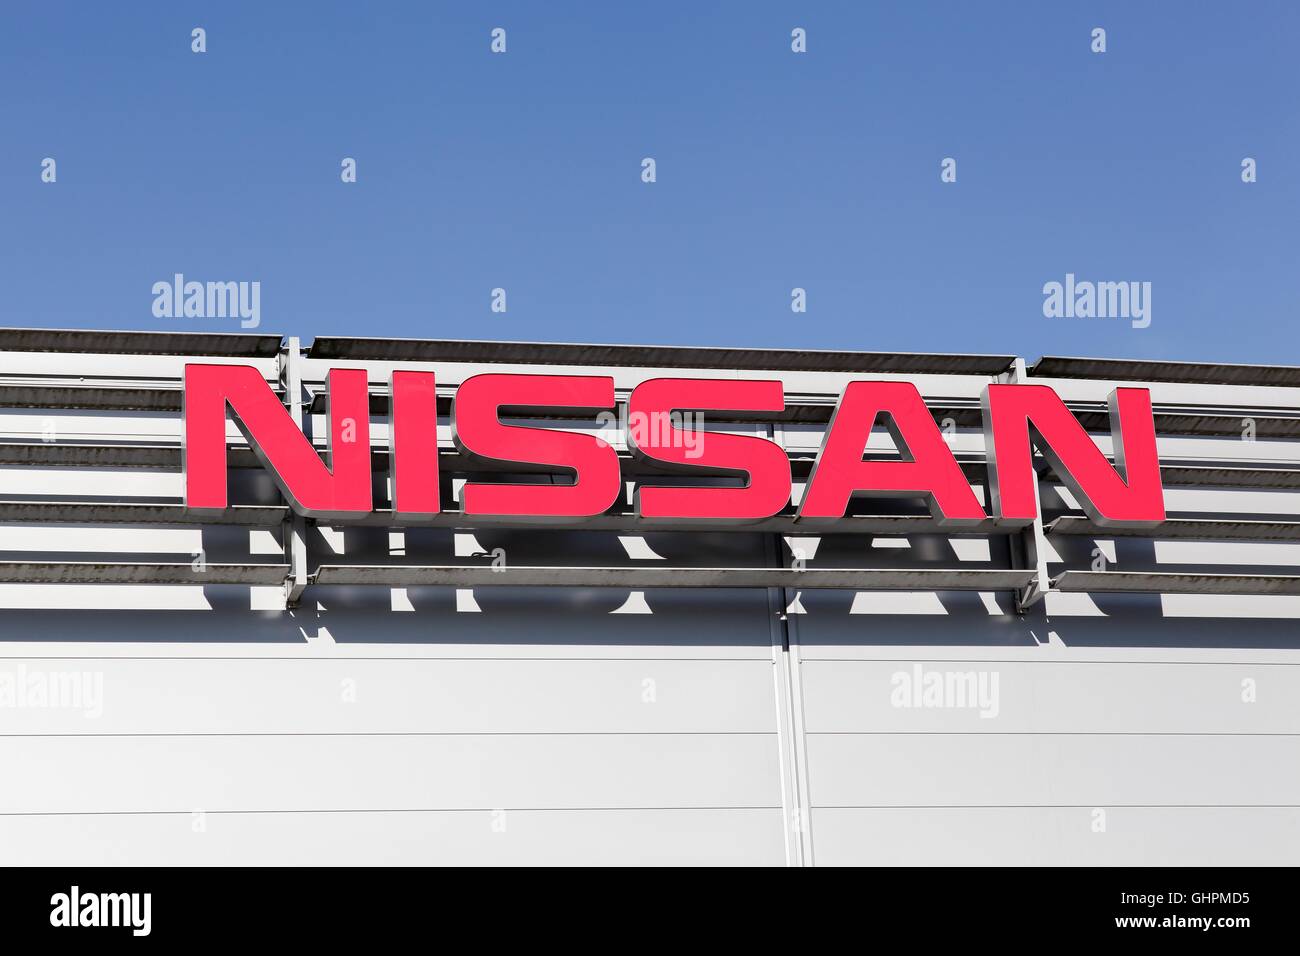 Nissan logo on a facade Stock Photo